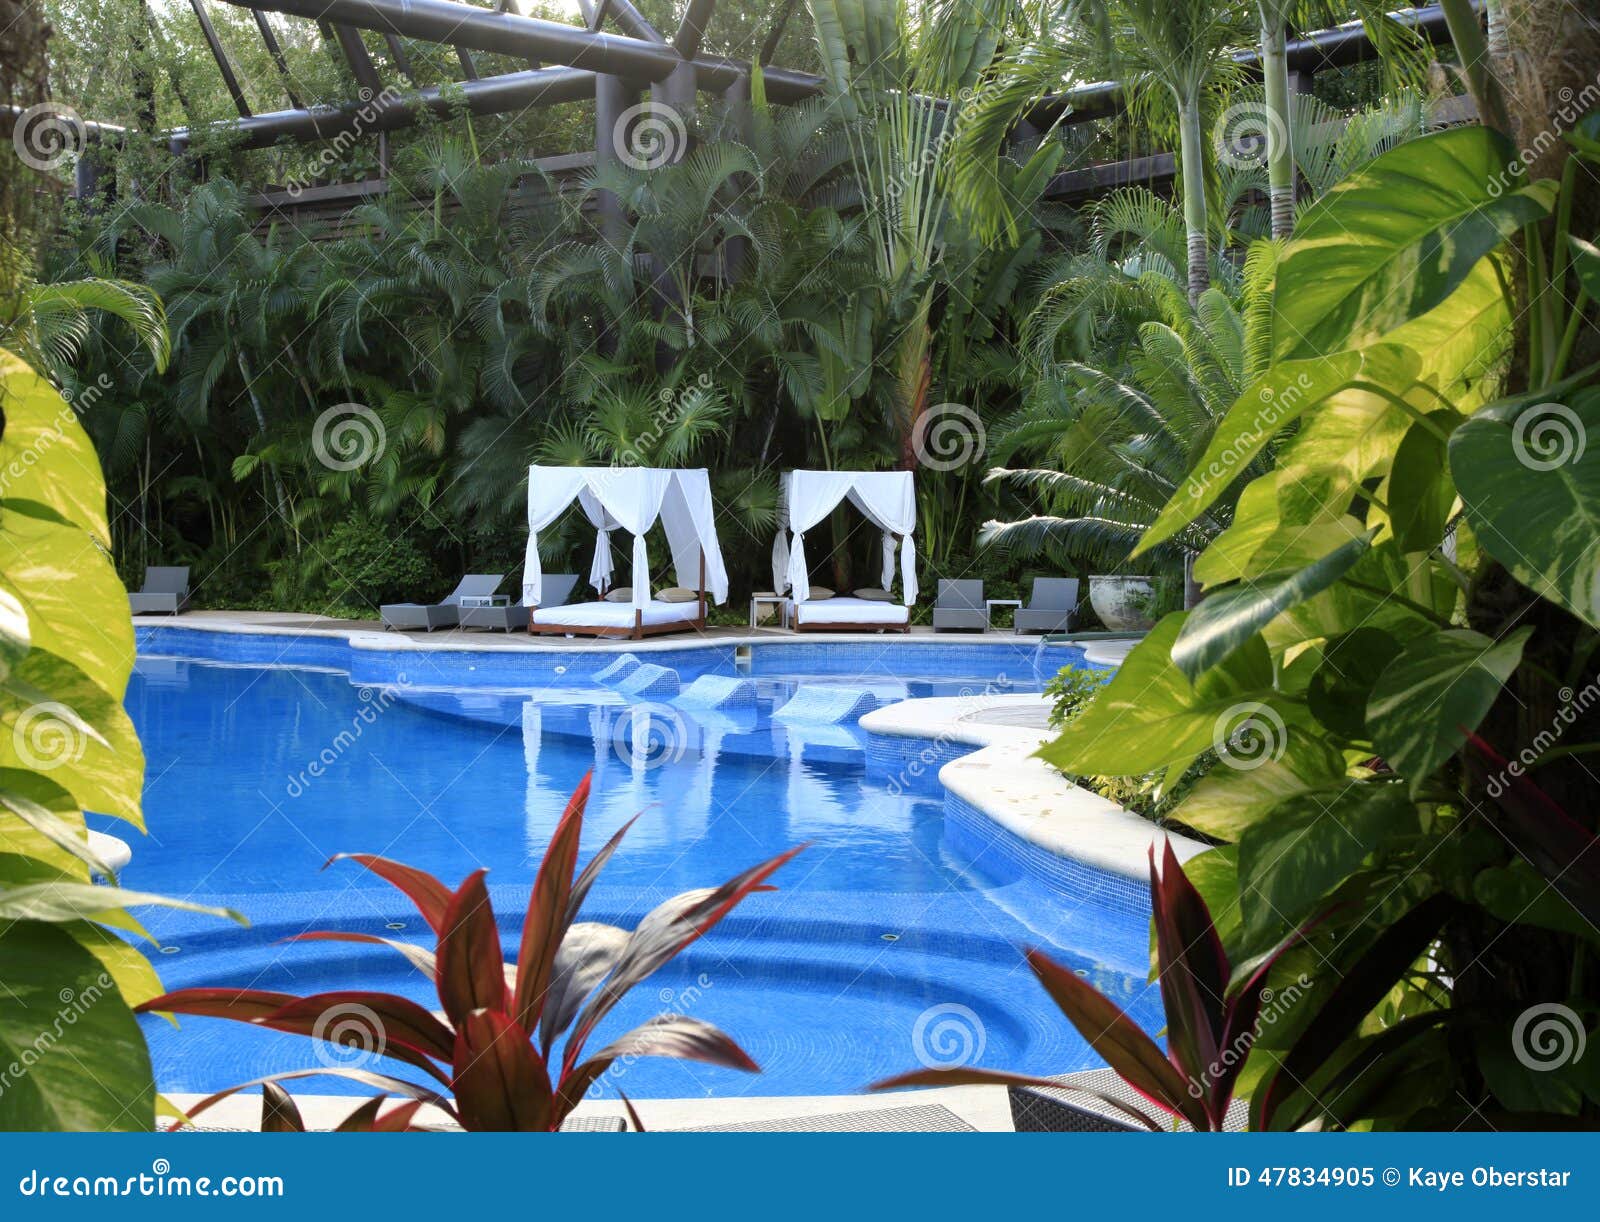 the pools at vidanta riviera maya